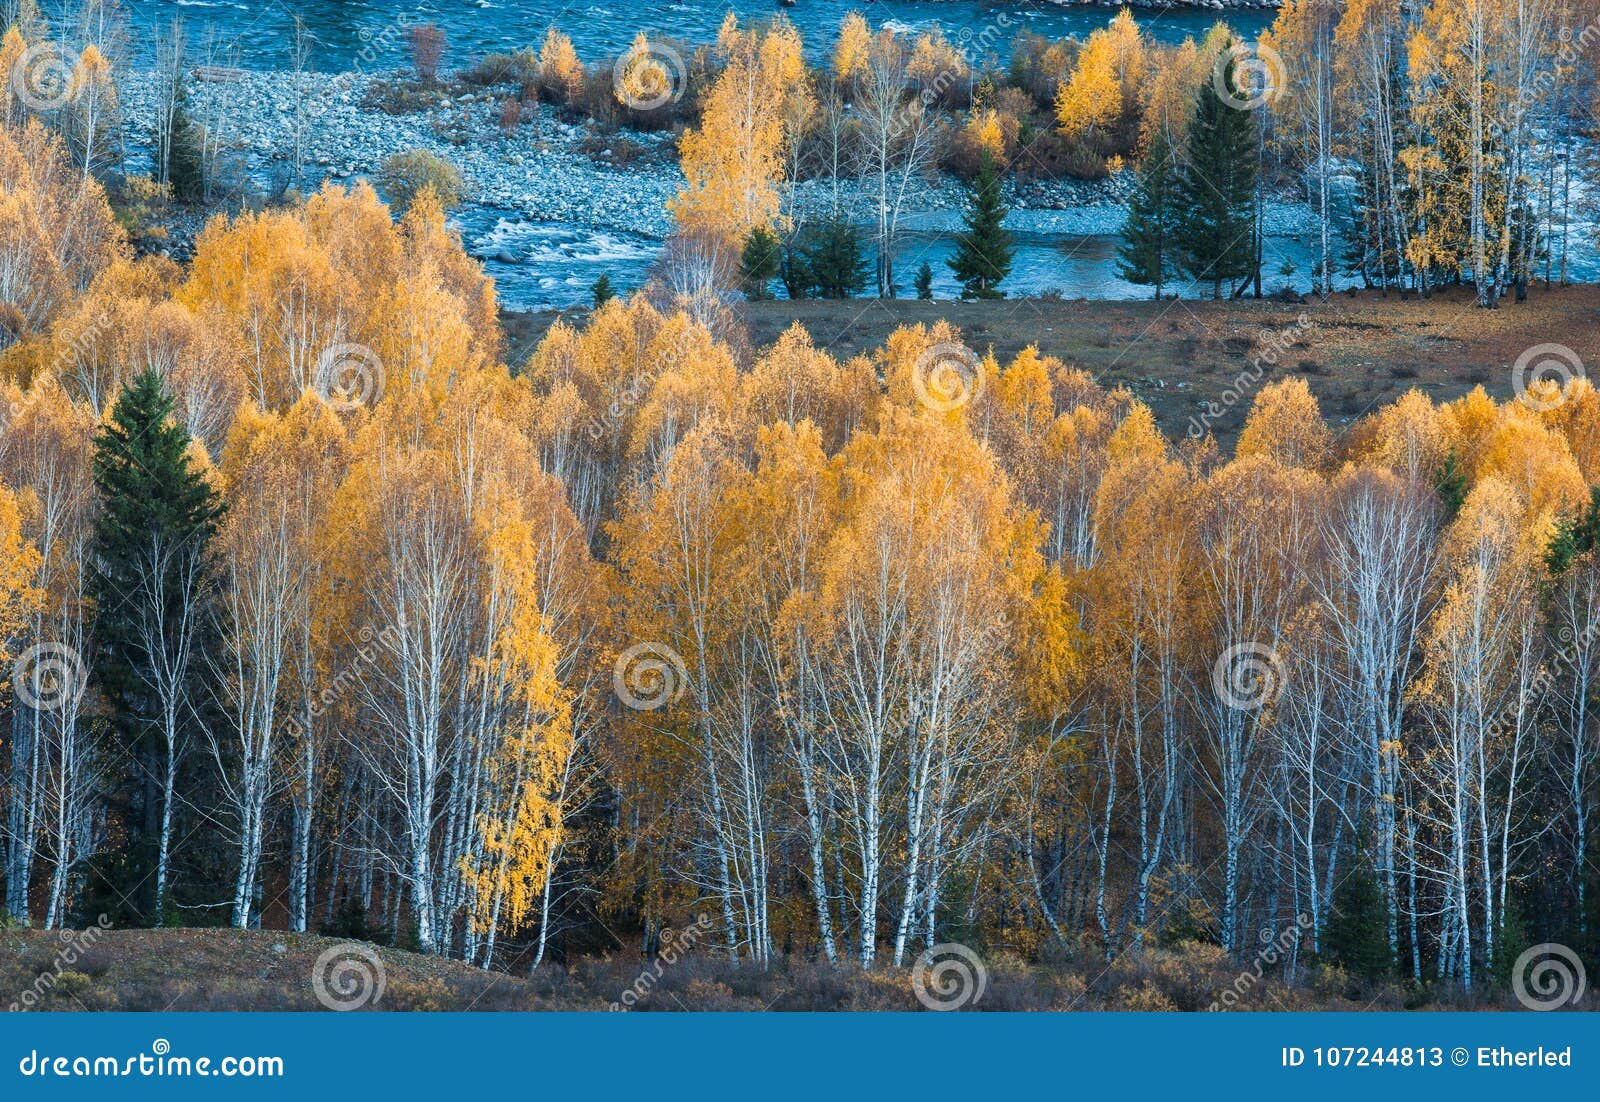 fairyland autumn birch forest